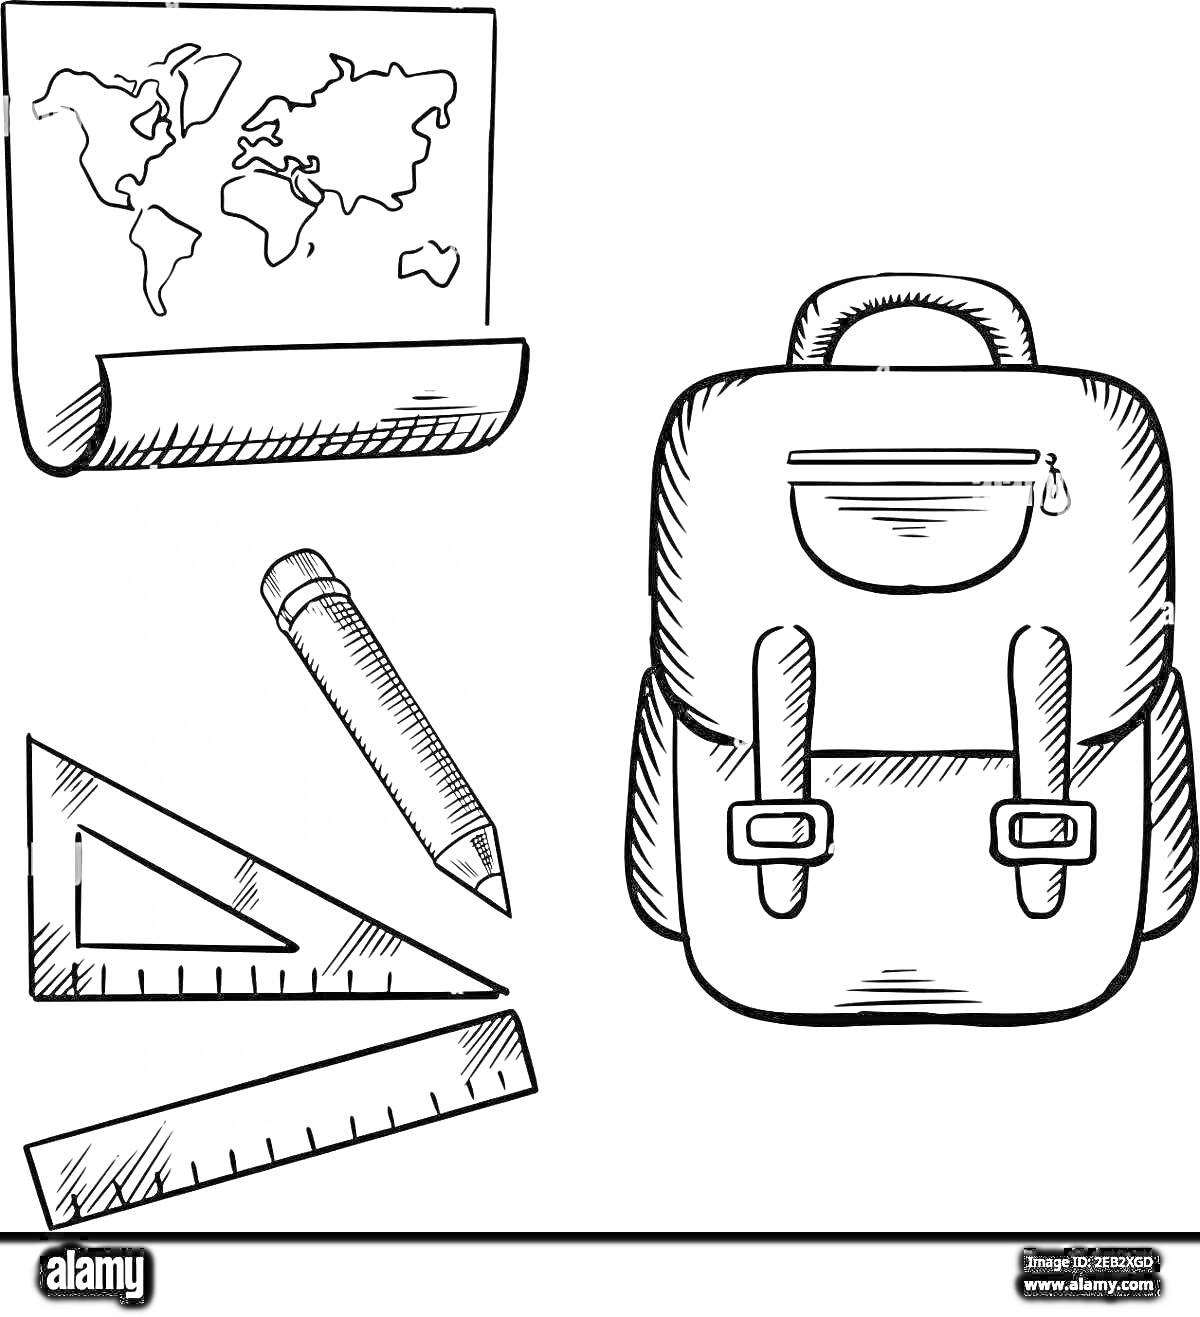 На раскраске изображено: Карта мира, Рюкзак, Линейка, Школьные принадлежности, Учебные материалы, Контурные рисунки